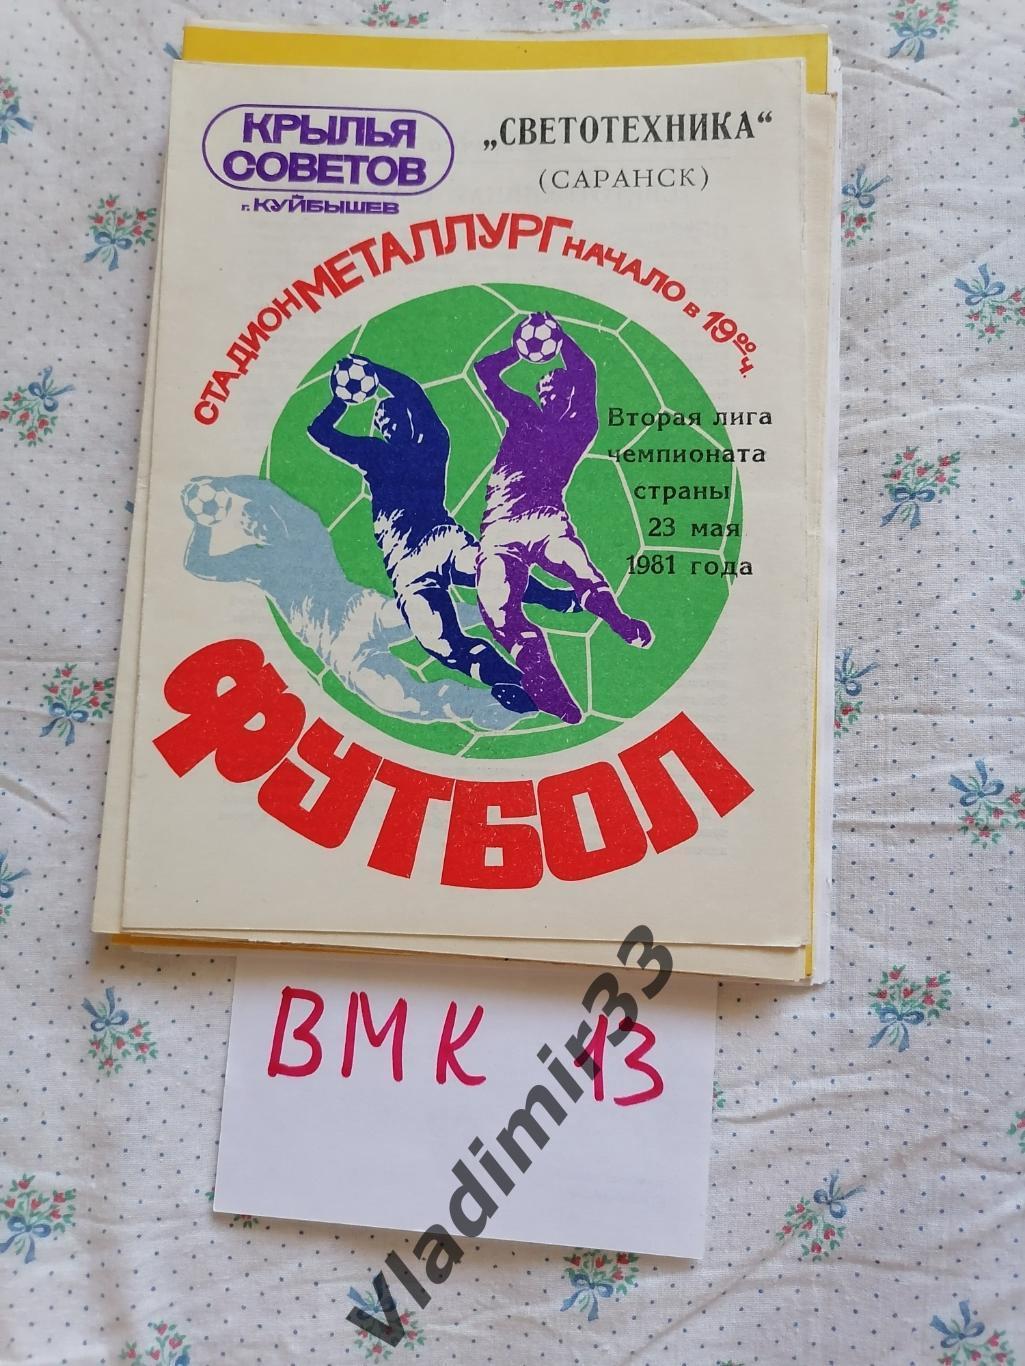 Крылья Советов Куйбышев - Светотехника Саранск 1981